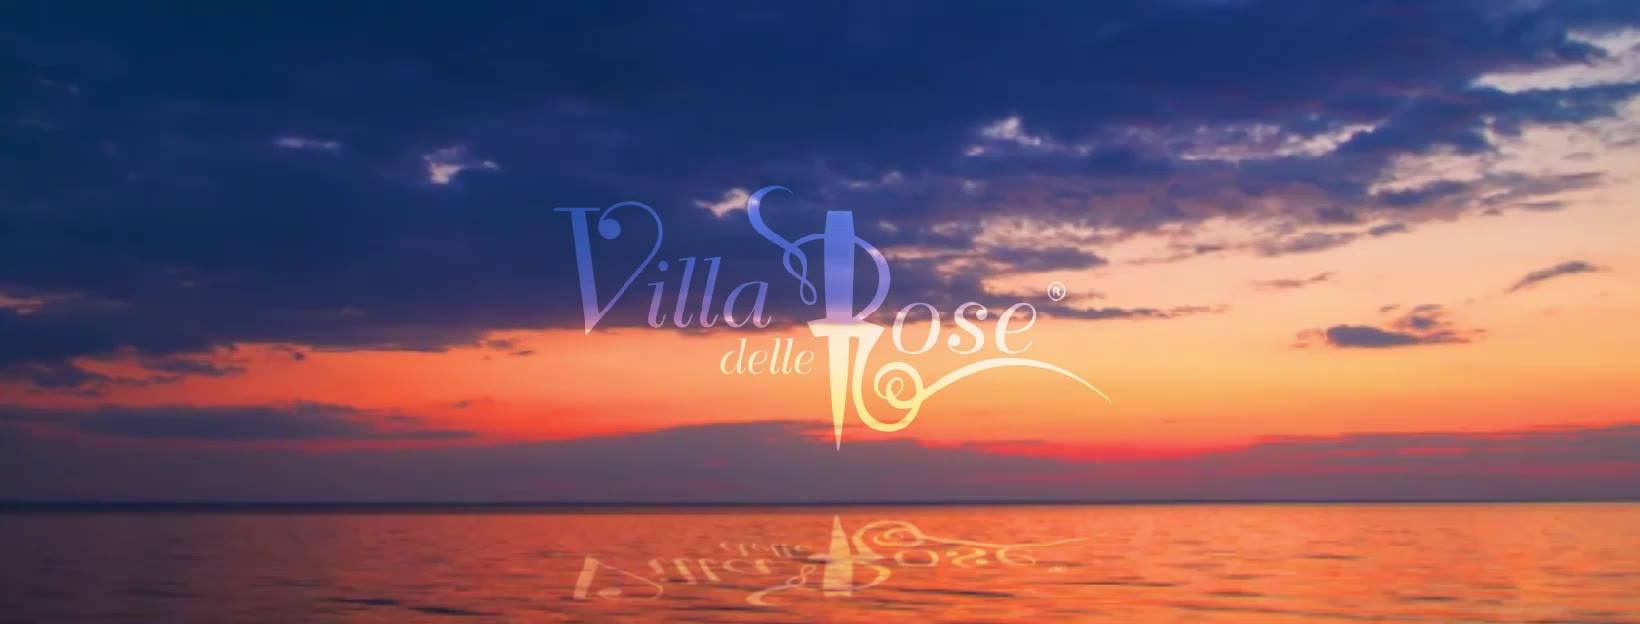 Villa delle Rose Misano Adriatico sabato pre Notte Rosa